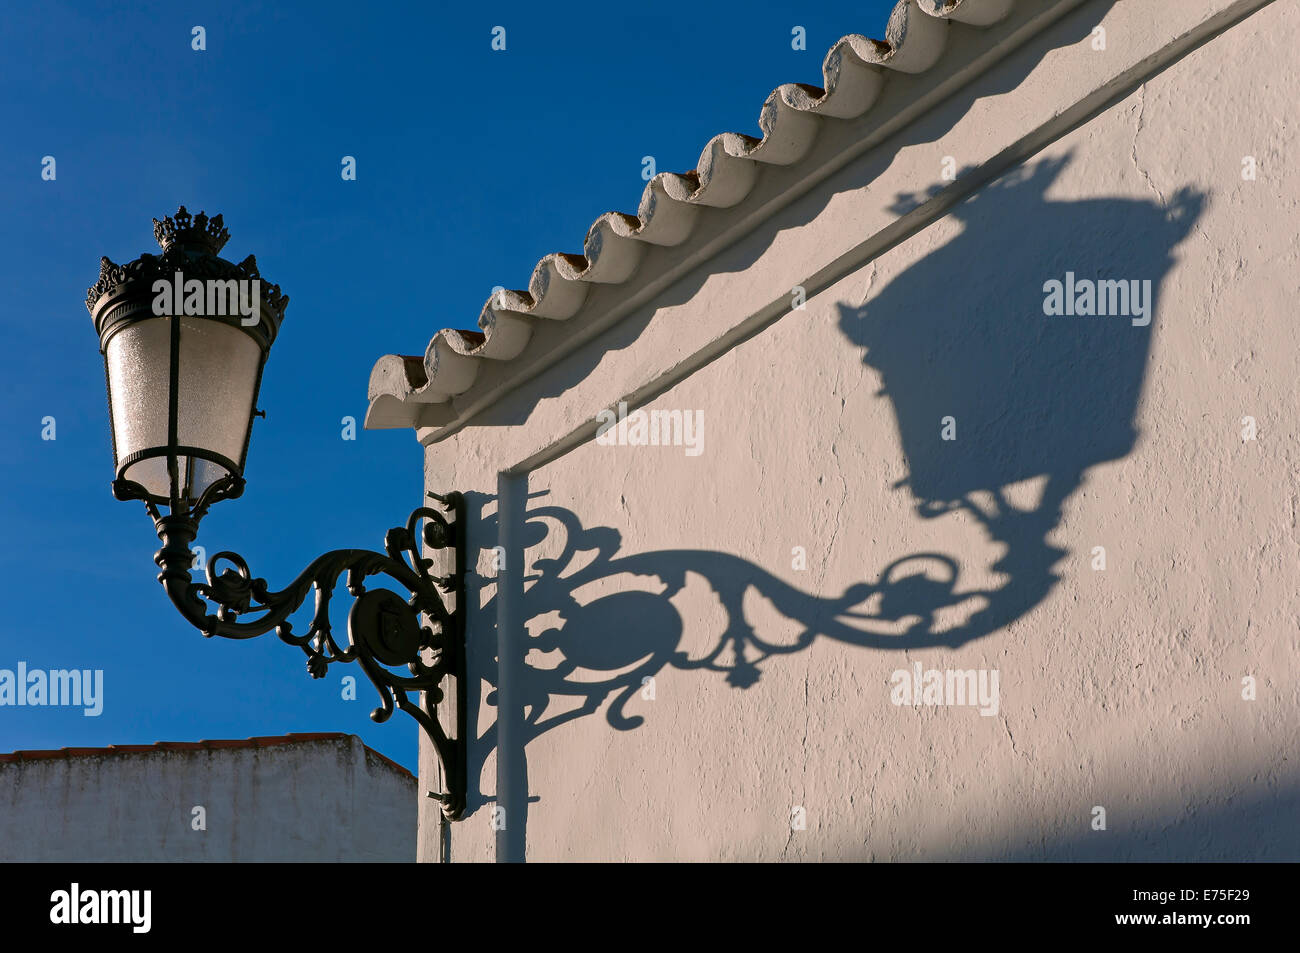 Lampione e shadow, Alosno, provincia di Huelva, regione dell'Andalusia, Spagna, Europa Foto Stock